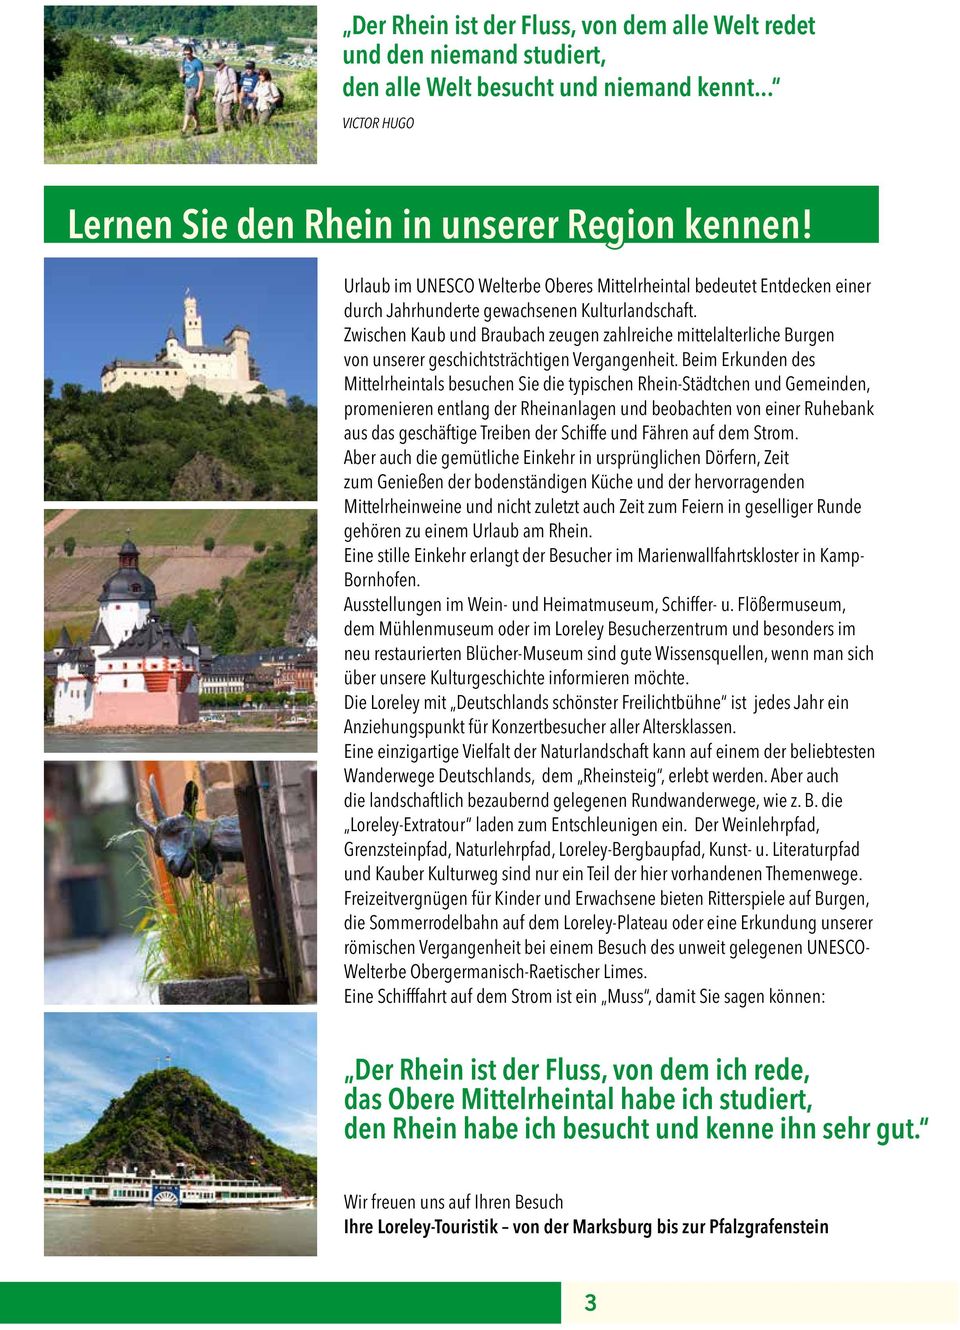 Zwischen Kaub und Braubach zeugen zahlreiche mittelalterliche Burgen von unserer geschichtsträchtigen Vergangenheit.